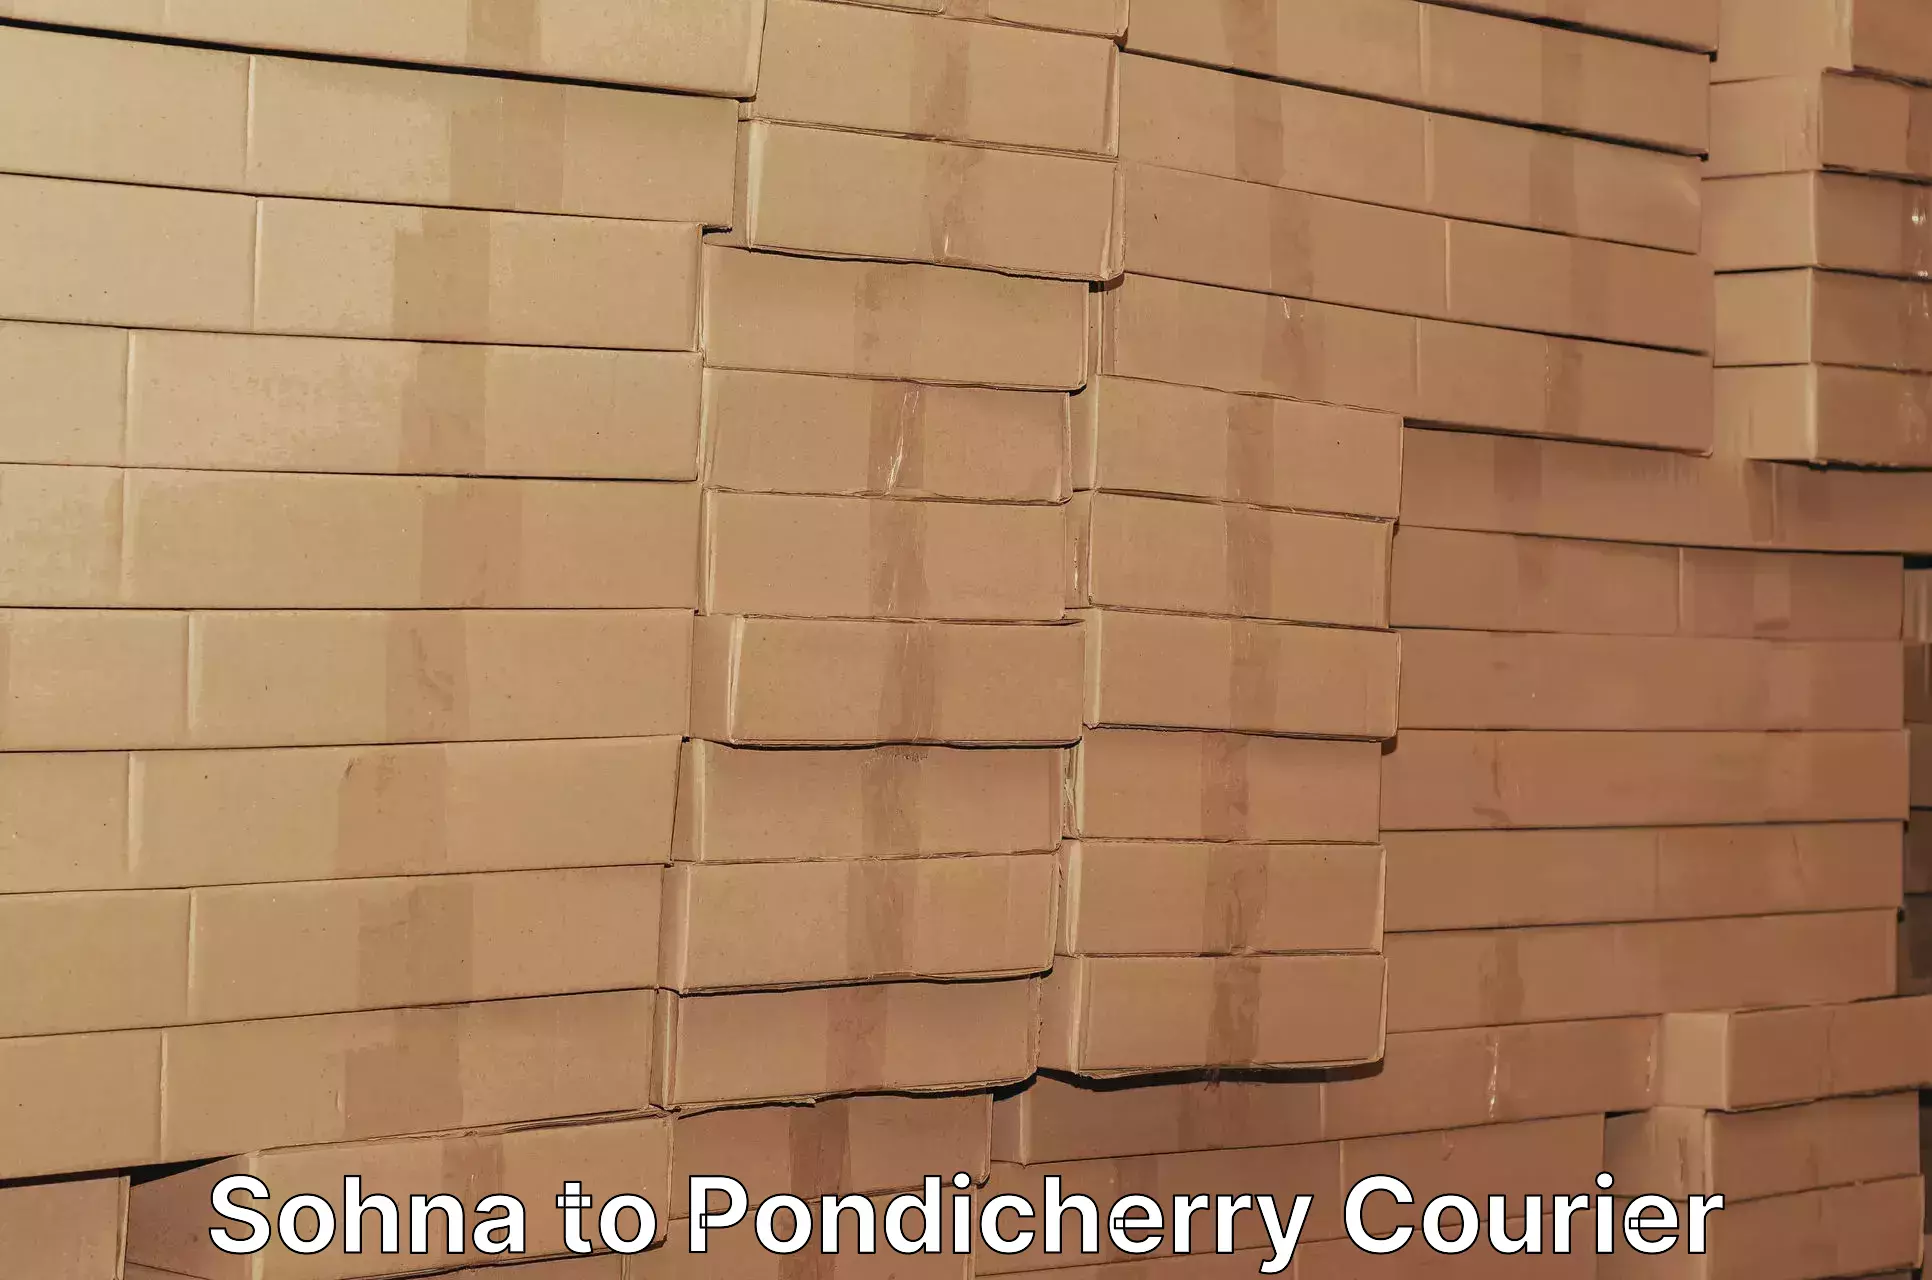 Express shipping Sohna to Pondicherry University